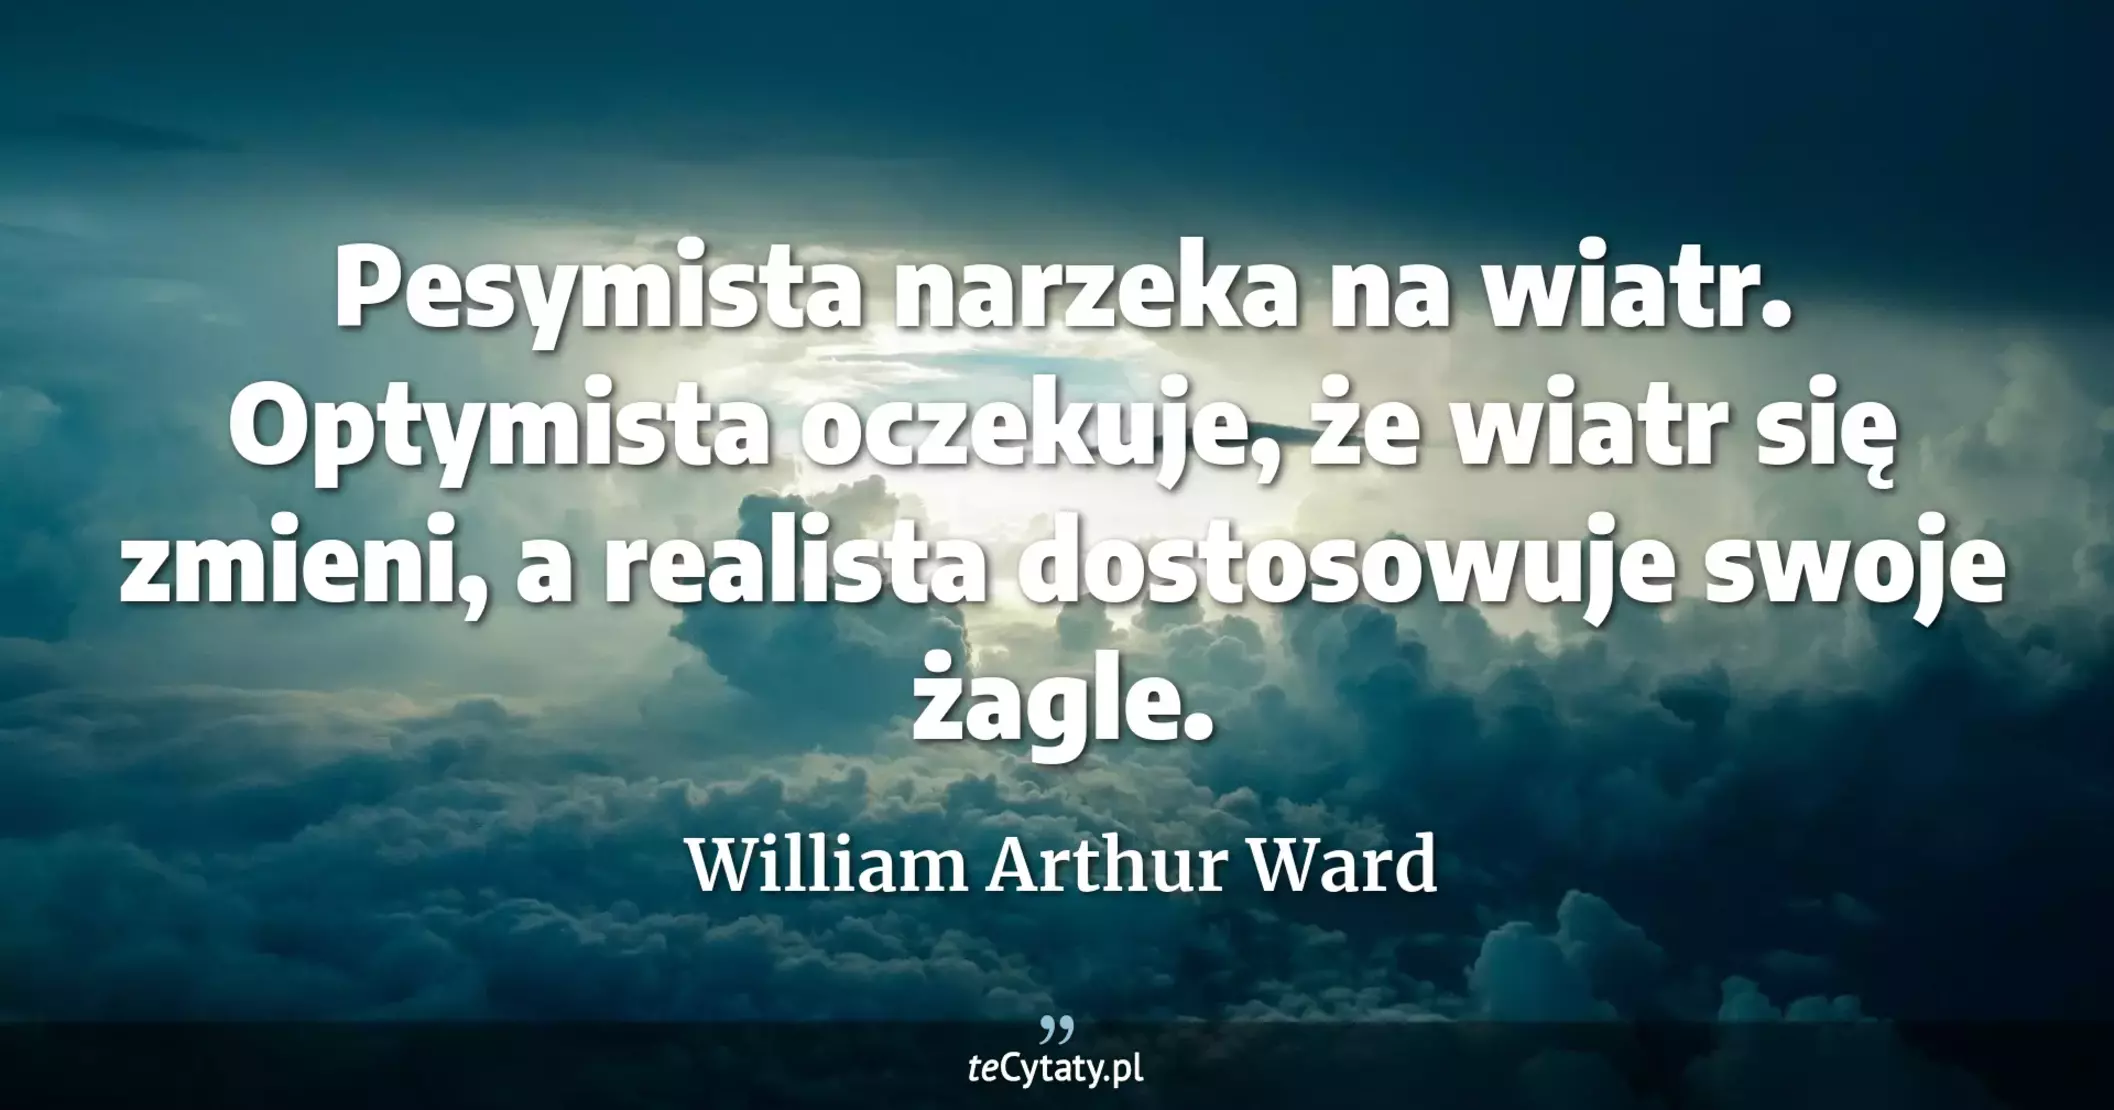 Pesymista narzeka na wiatr. Optymista oczekuje, że wiatr się zmieni, a realista dostosowuje swoje żagle. - William Arthur Ward